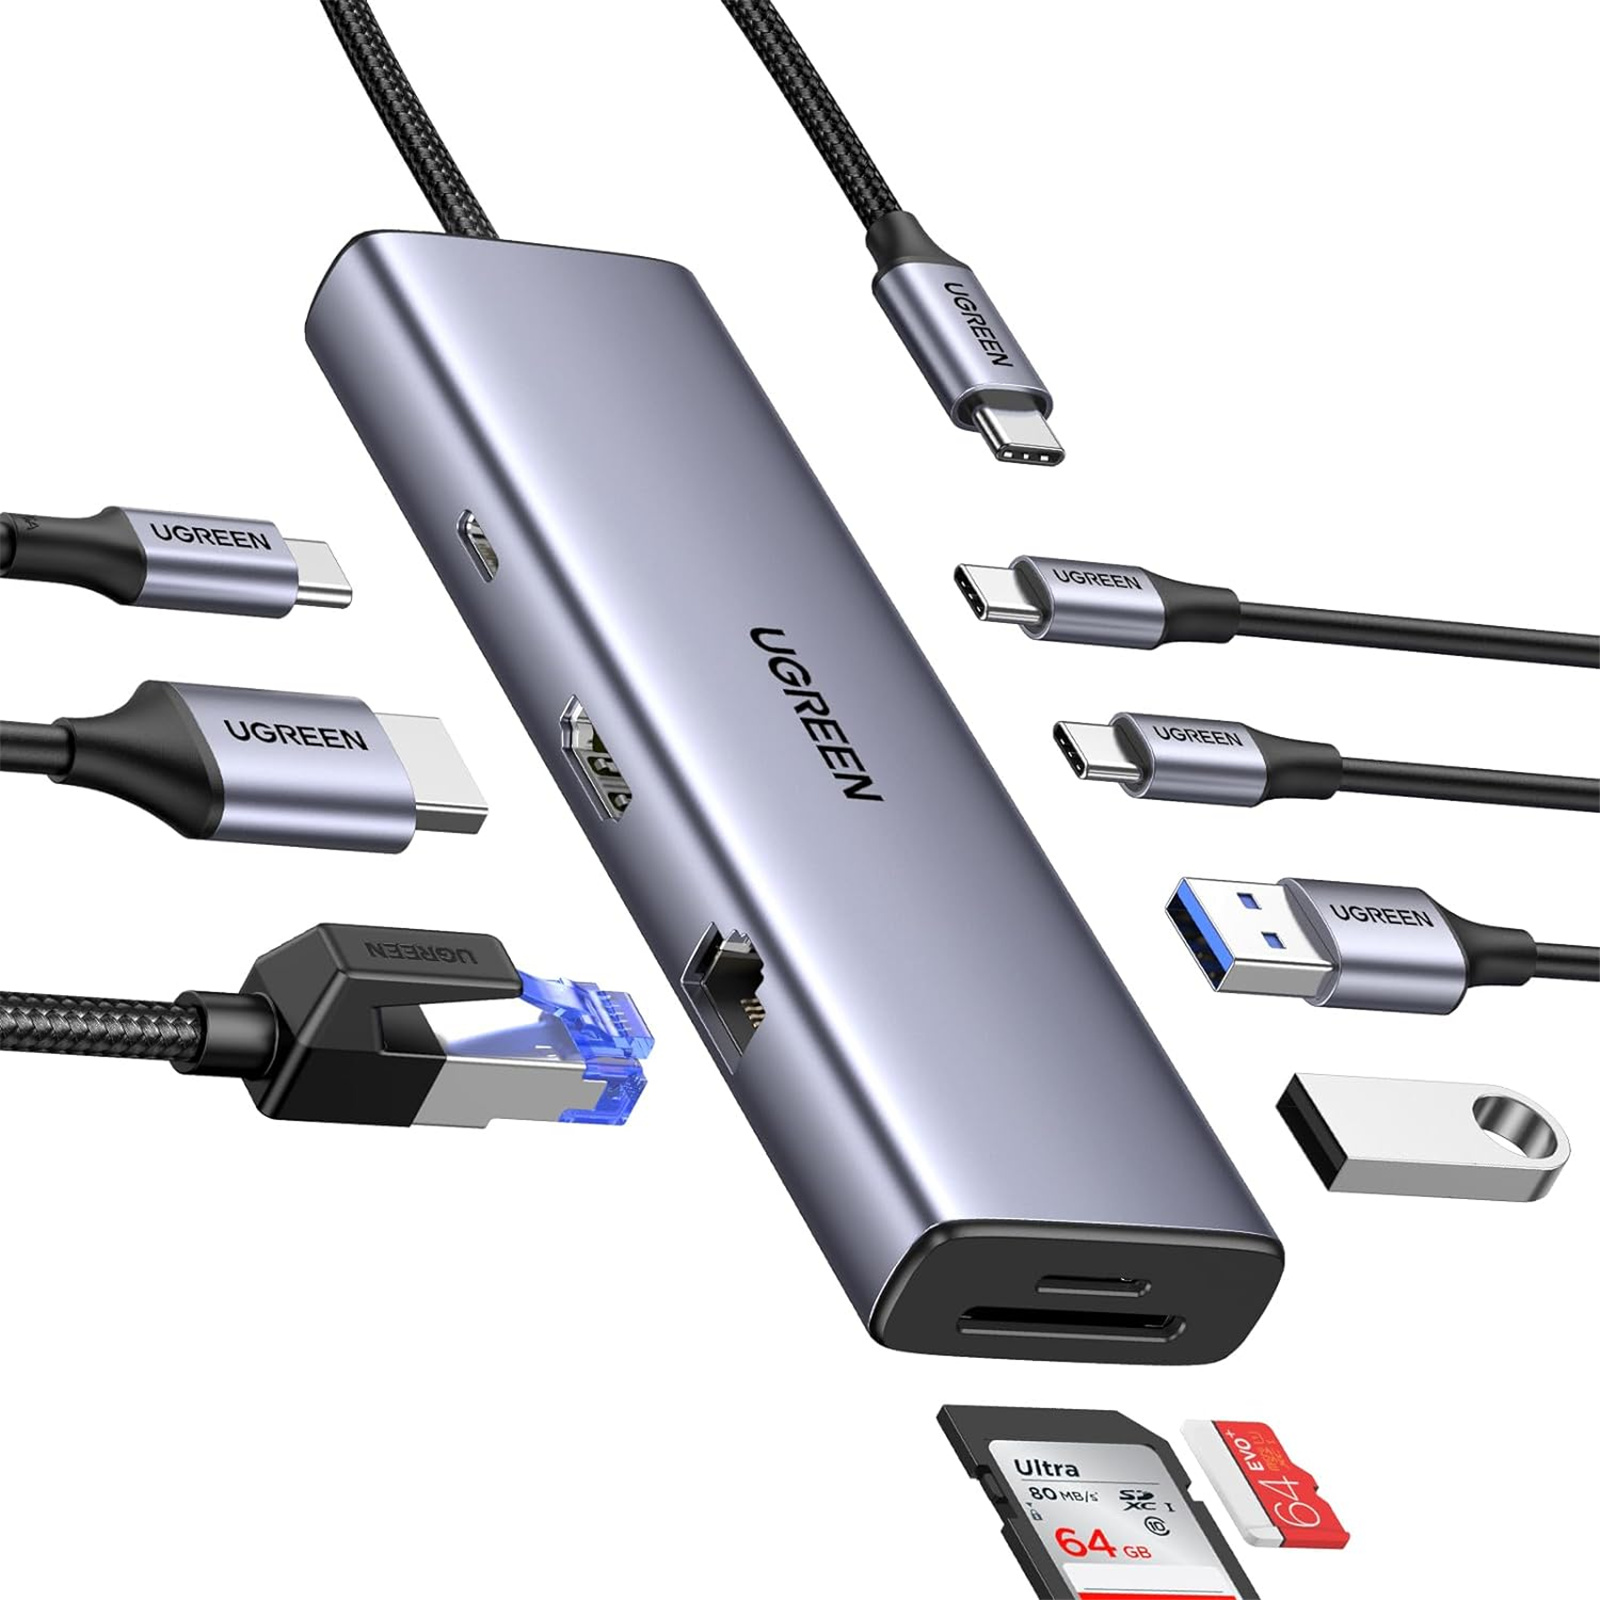 Ugreen USB-C Hub 4K HDMI Adapter RJ45 USB 3.0 PD 100W Dock MacBook